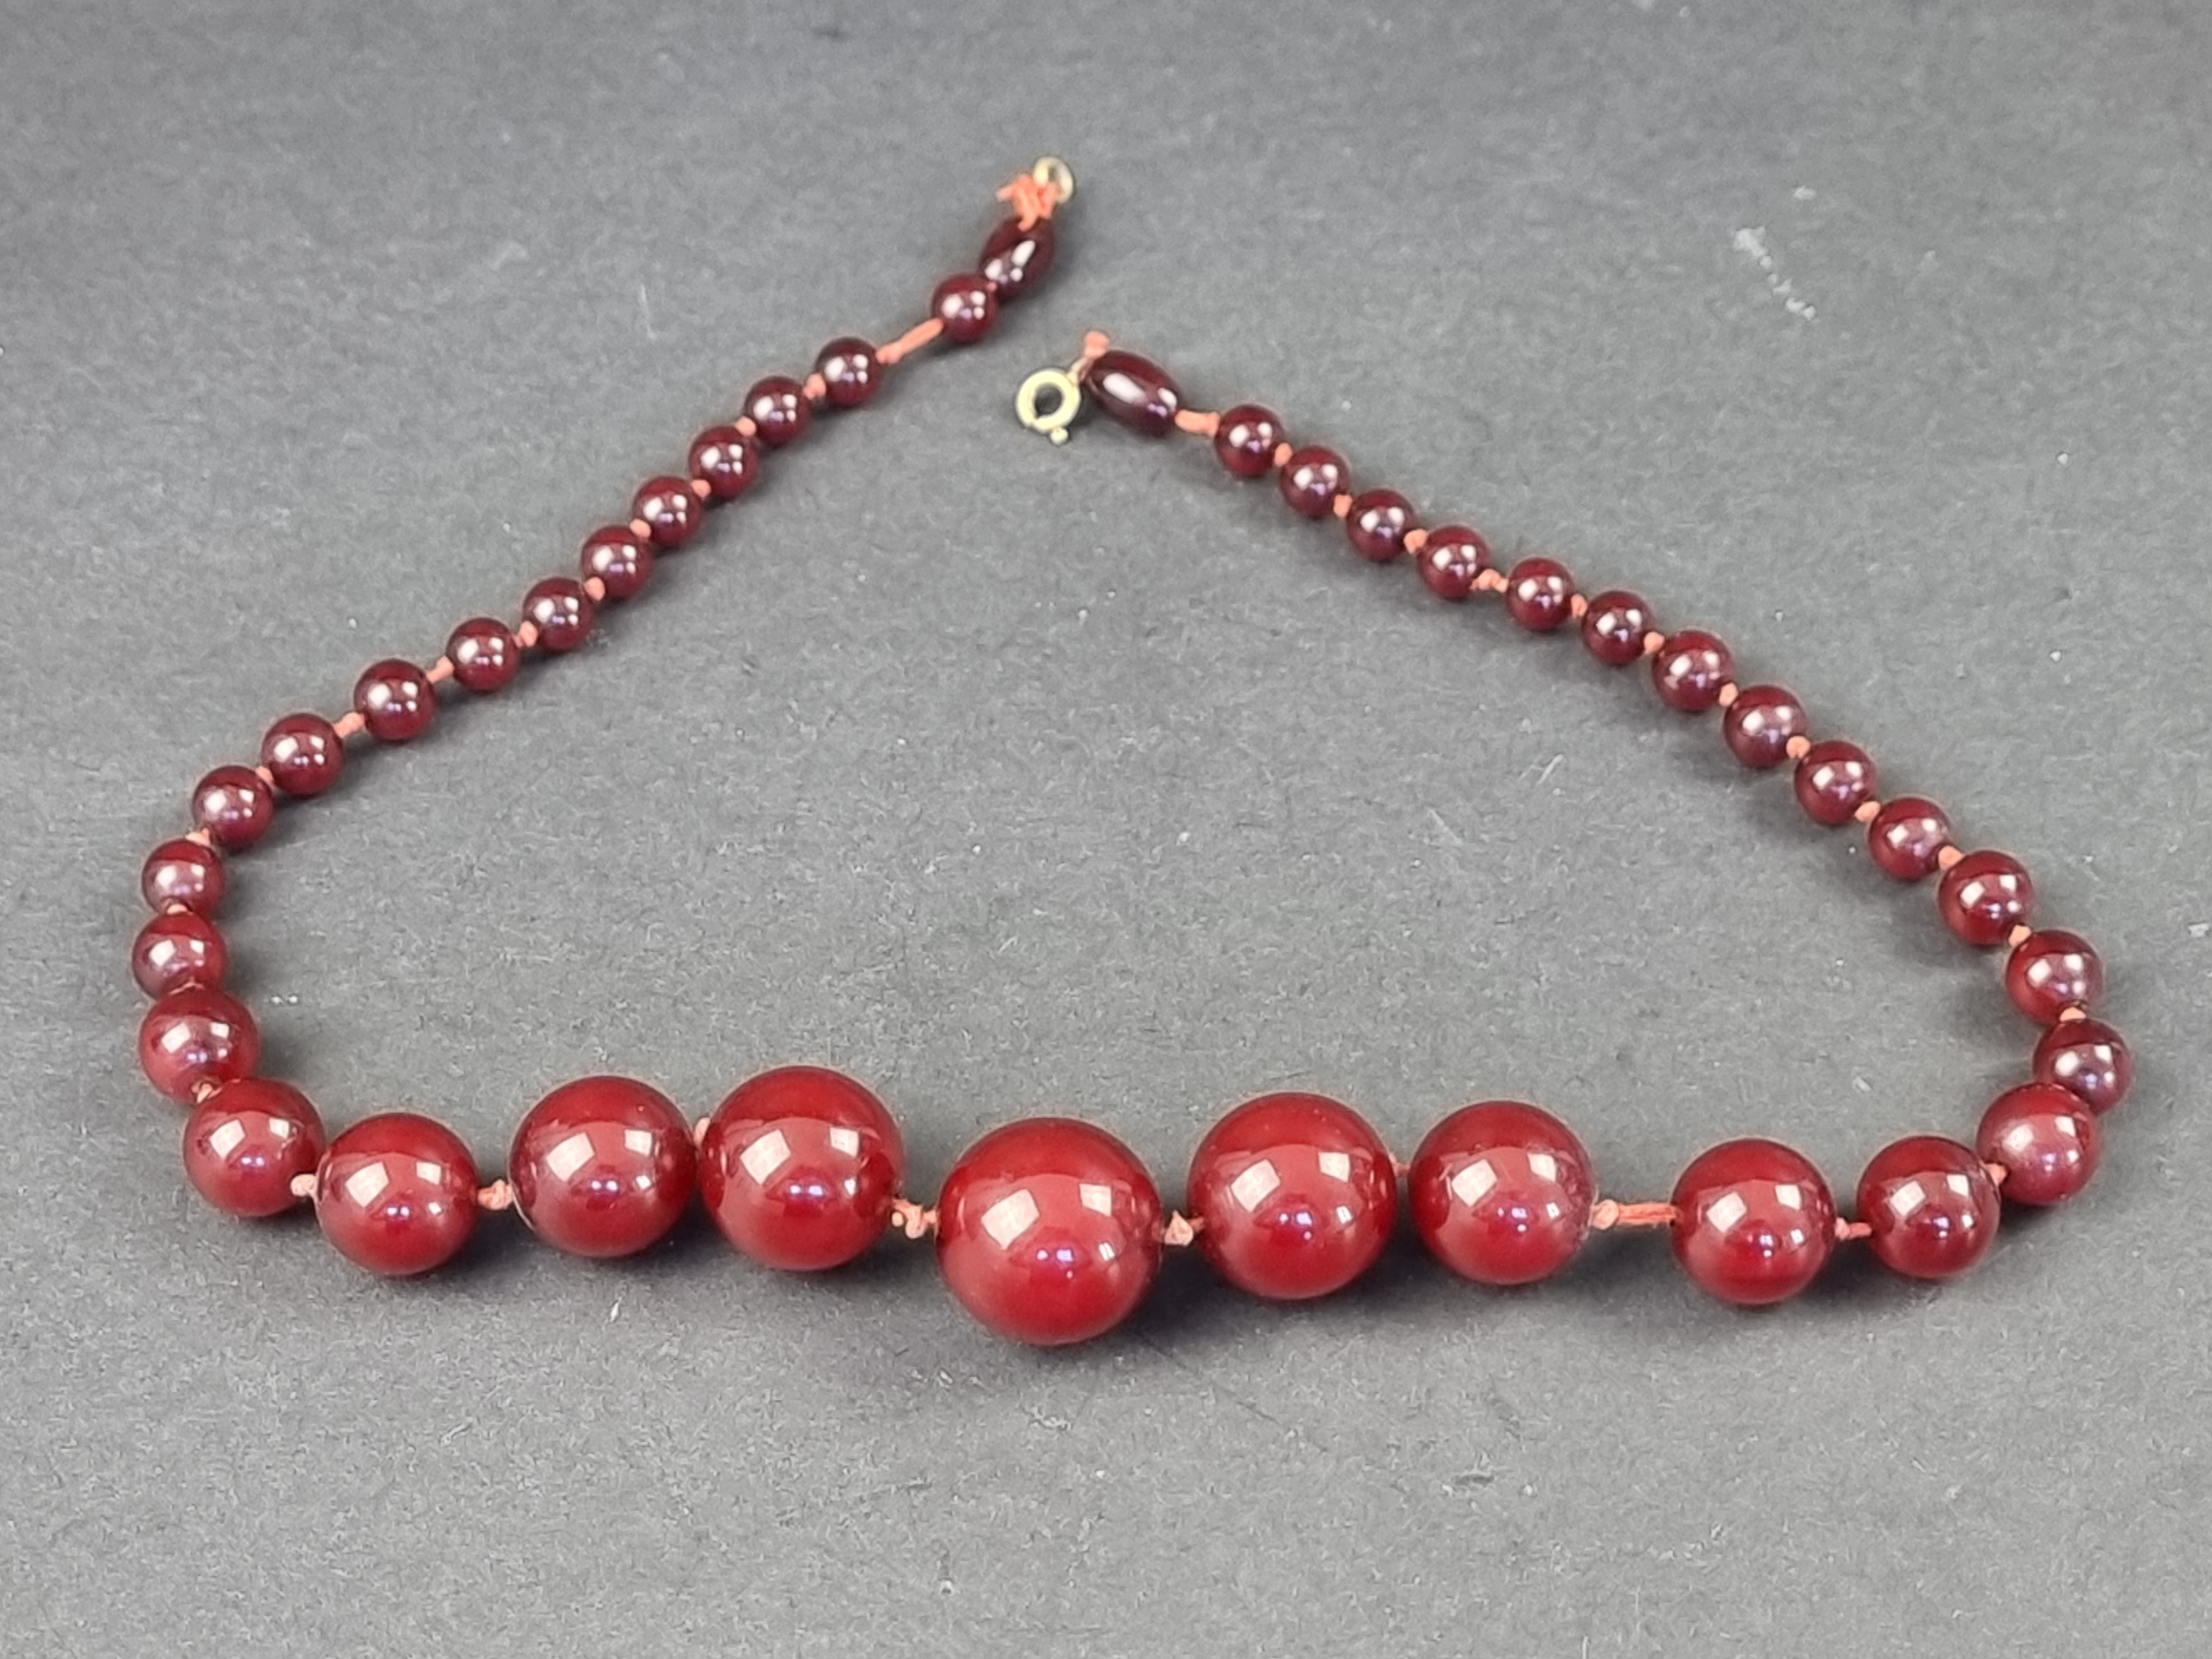 A Bakelite 'cherry amber' bead necklace, the beads 7-21mm diameter, gross weight 46g, 51cm long,